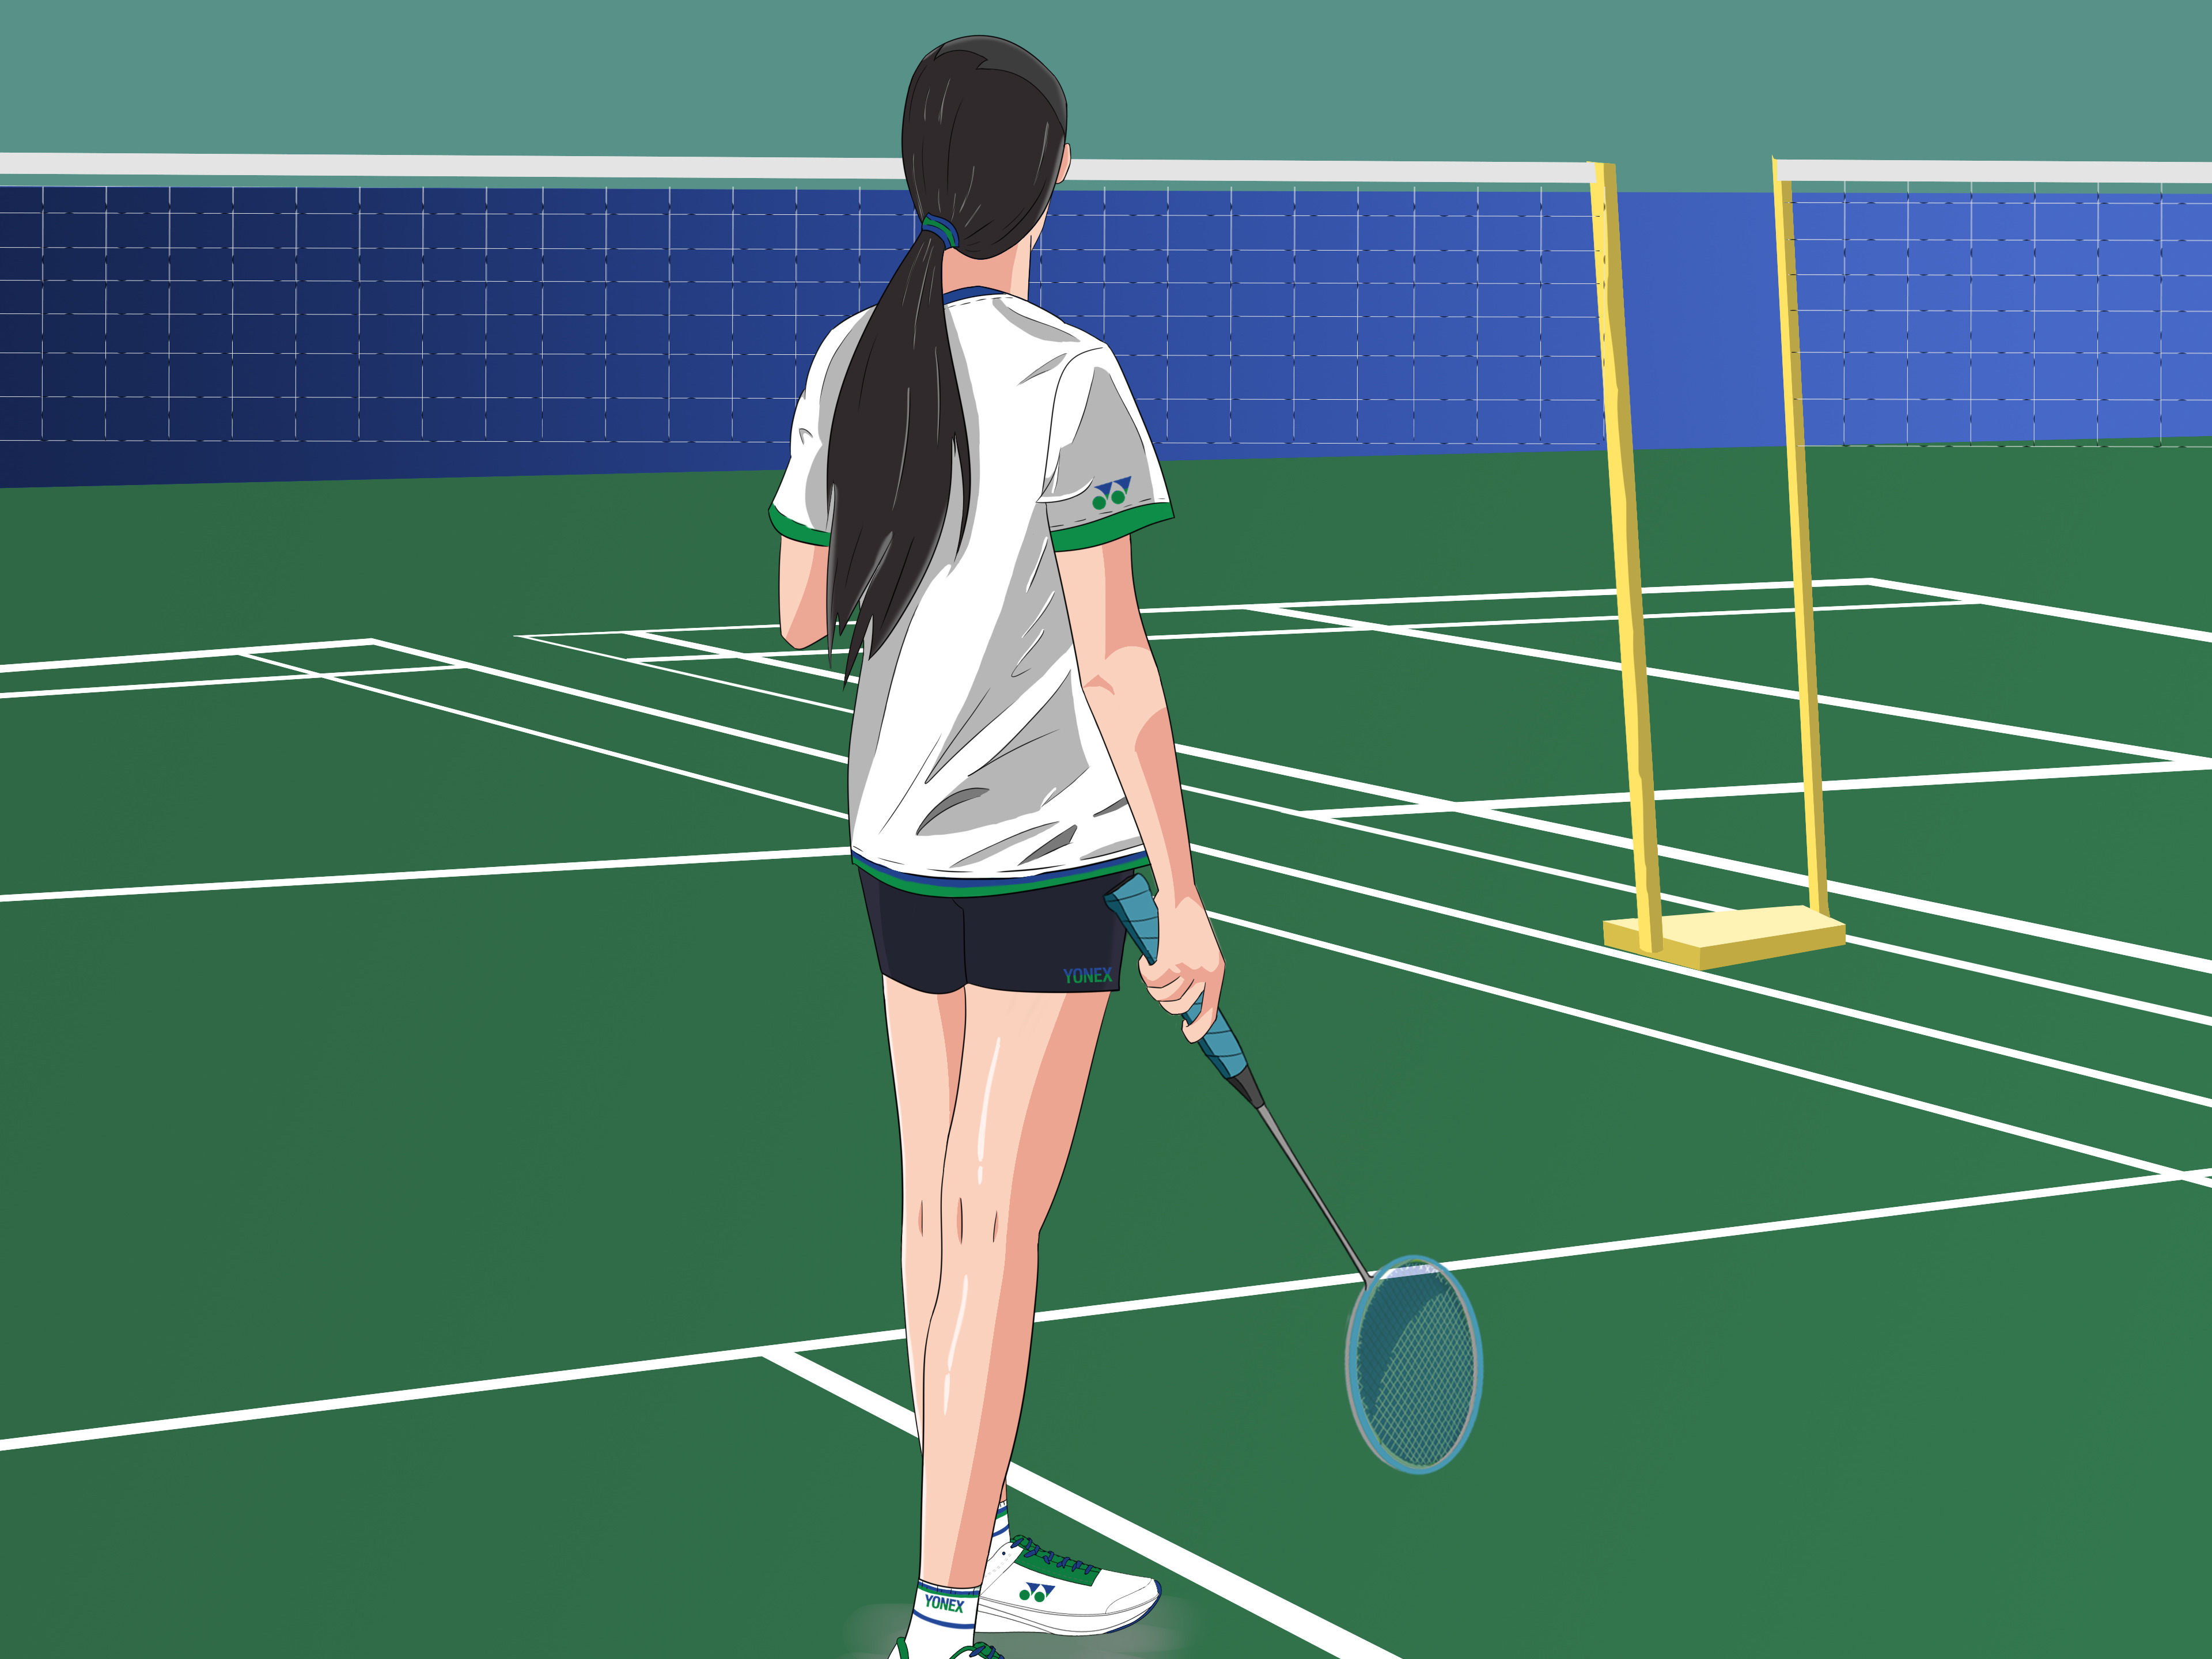 2020省青少年羽毛球锦标赛在安化举行 - 体育赛事 - 新湖南